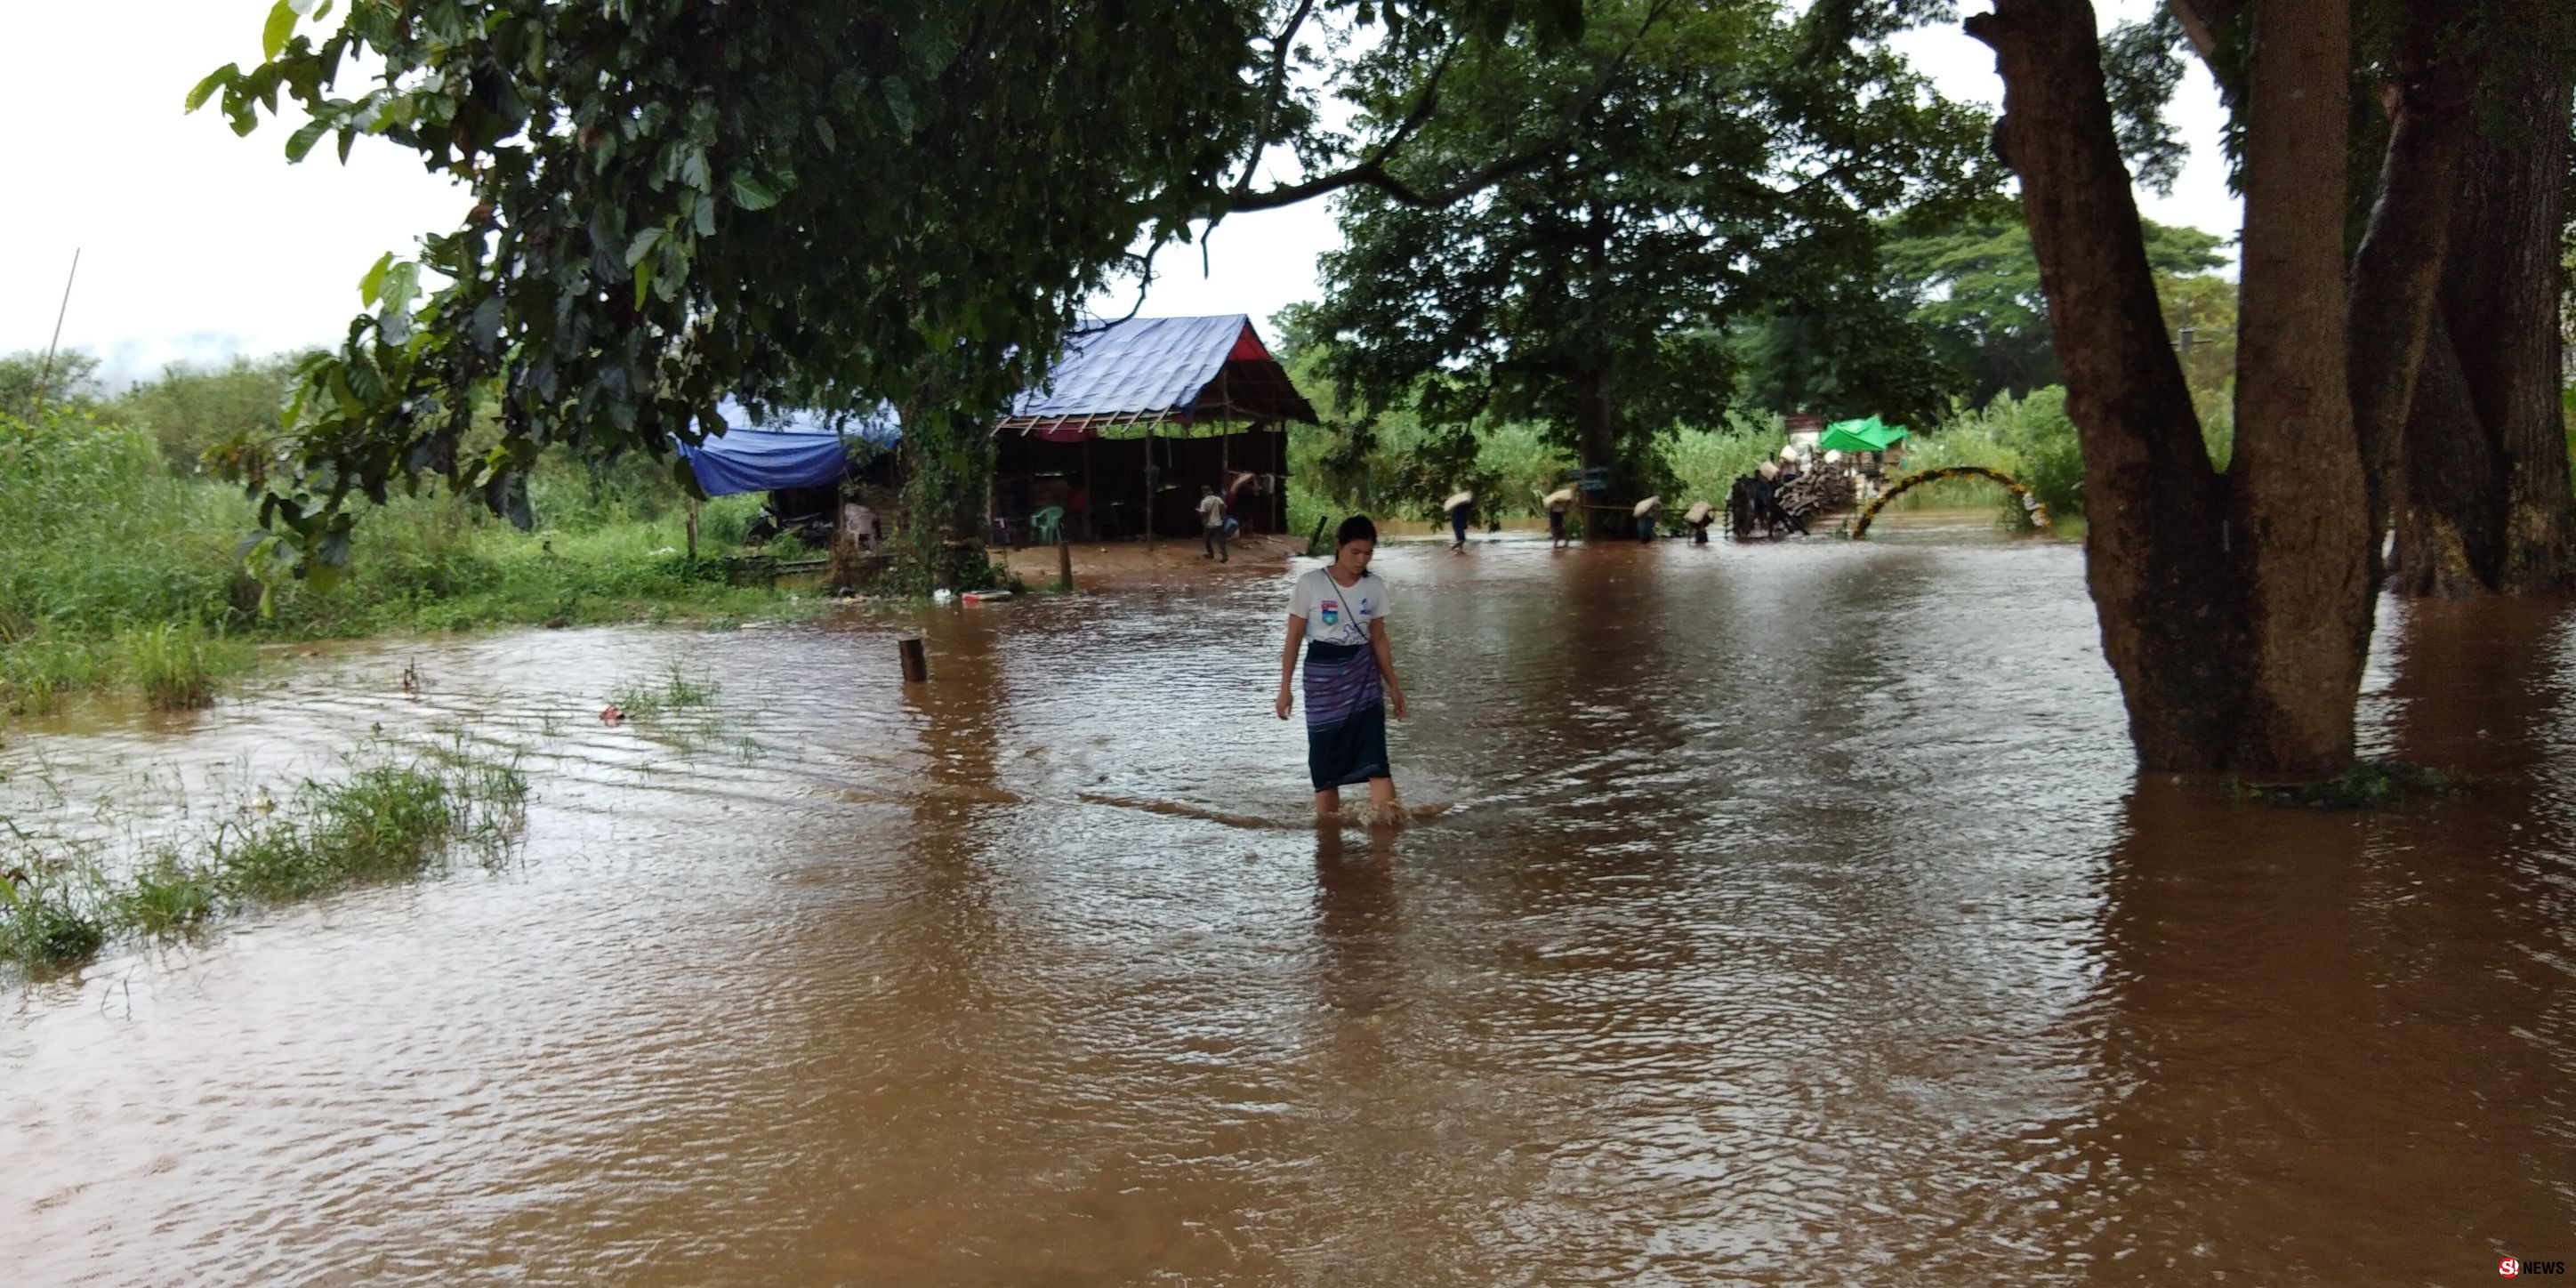 จ.ตาก - ฝนตกหนักชายแดนไทย-พม่า น้ำท่วมหนัก เกษตรกรปาดน้ำตาพร้อมหยาดฝน